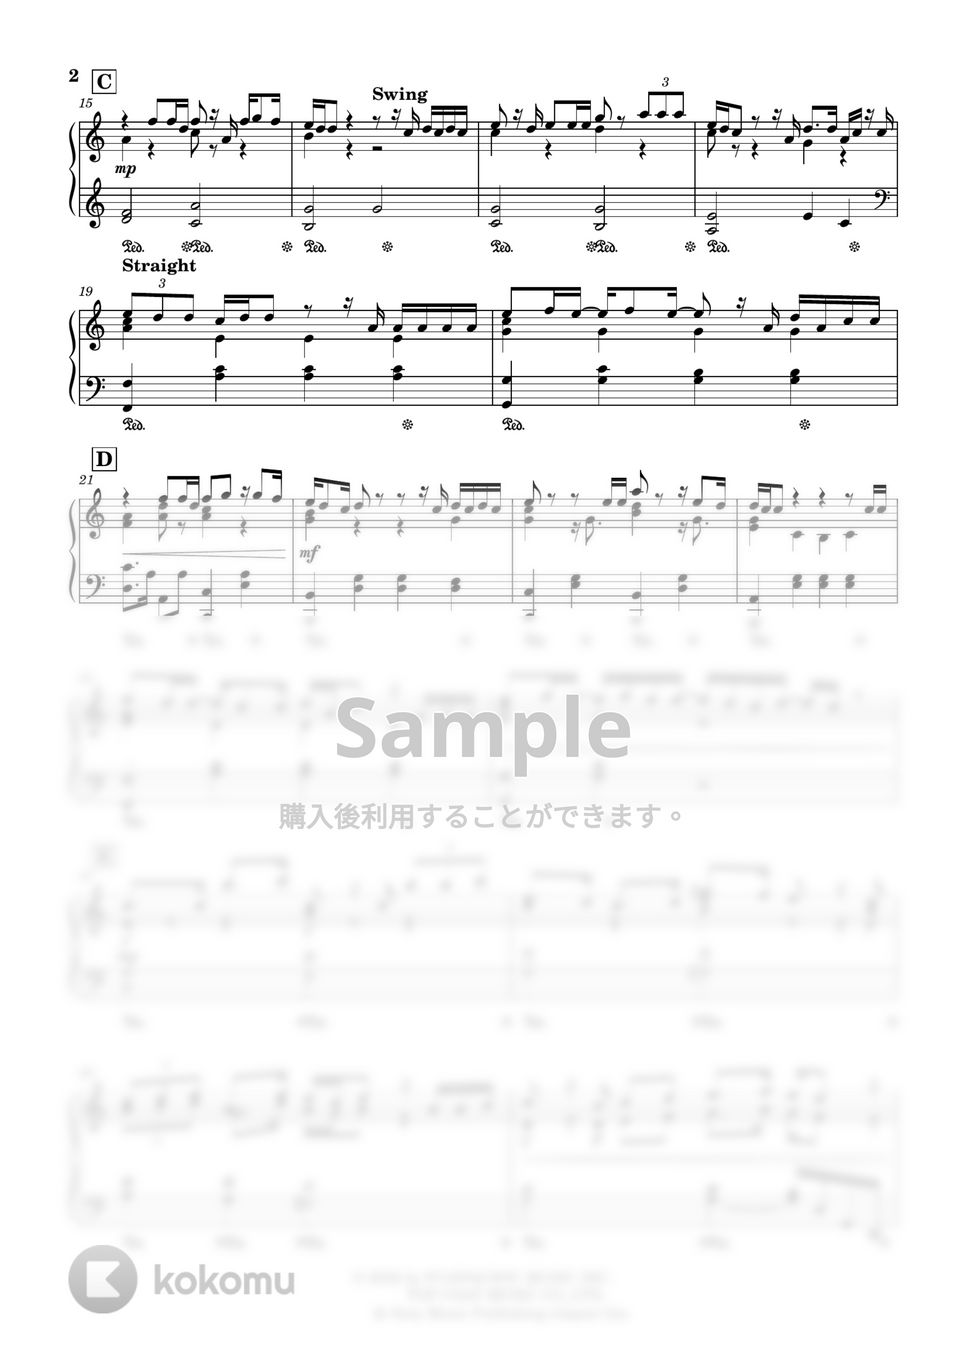 King Gnu - カメレオン (ドラマ『ミステリと言う勿れ』主題歌) by Trohishima